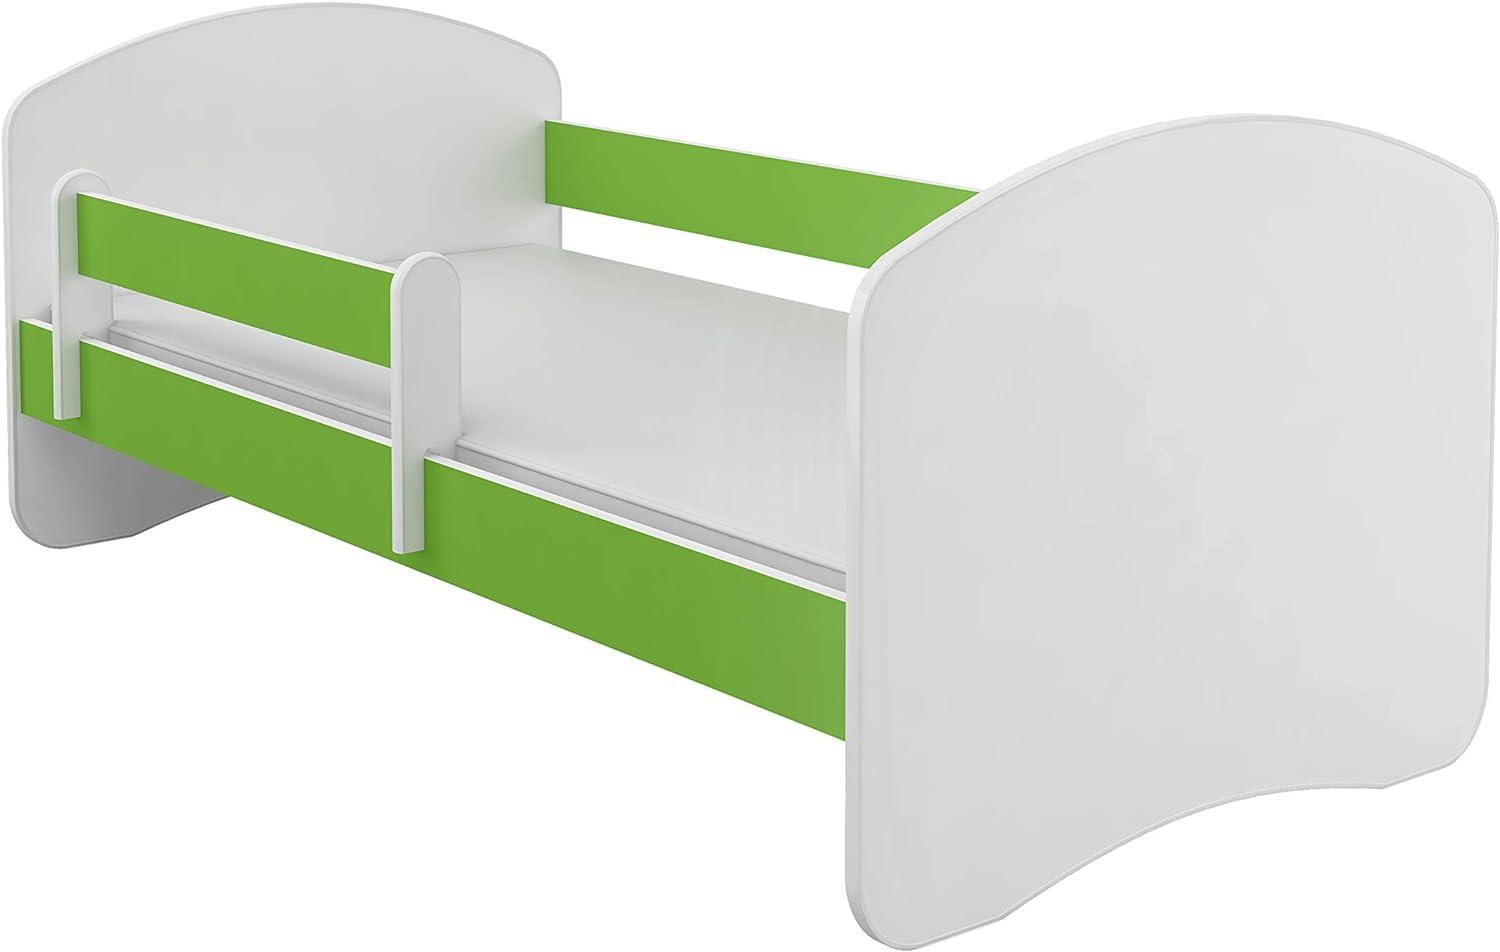 Kinderbett Jugendbett mit einer Schublade und Matratze Weiß ACMA II (160x80 cm, Grün) Bild 1